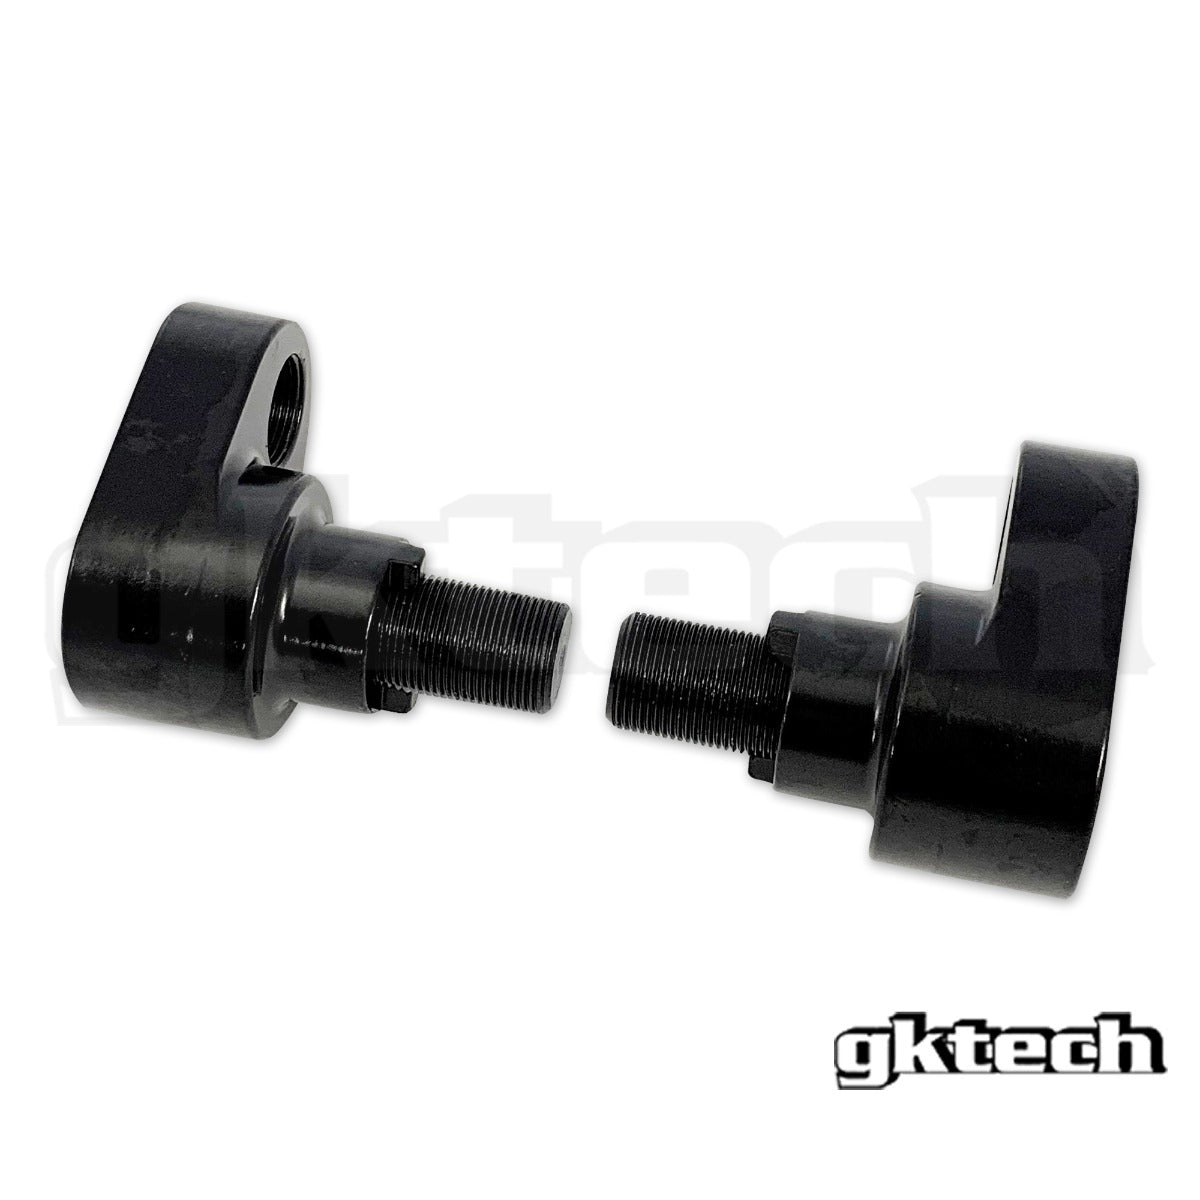 GKTECH V2 4130 high tensile offset steering rack extenders 